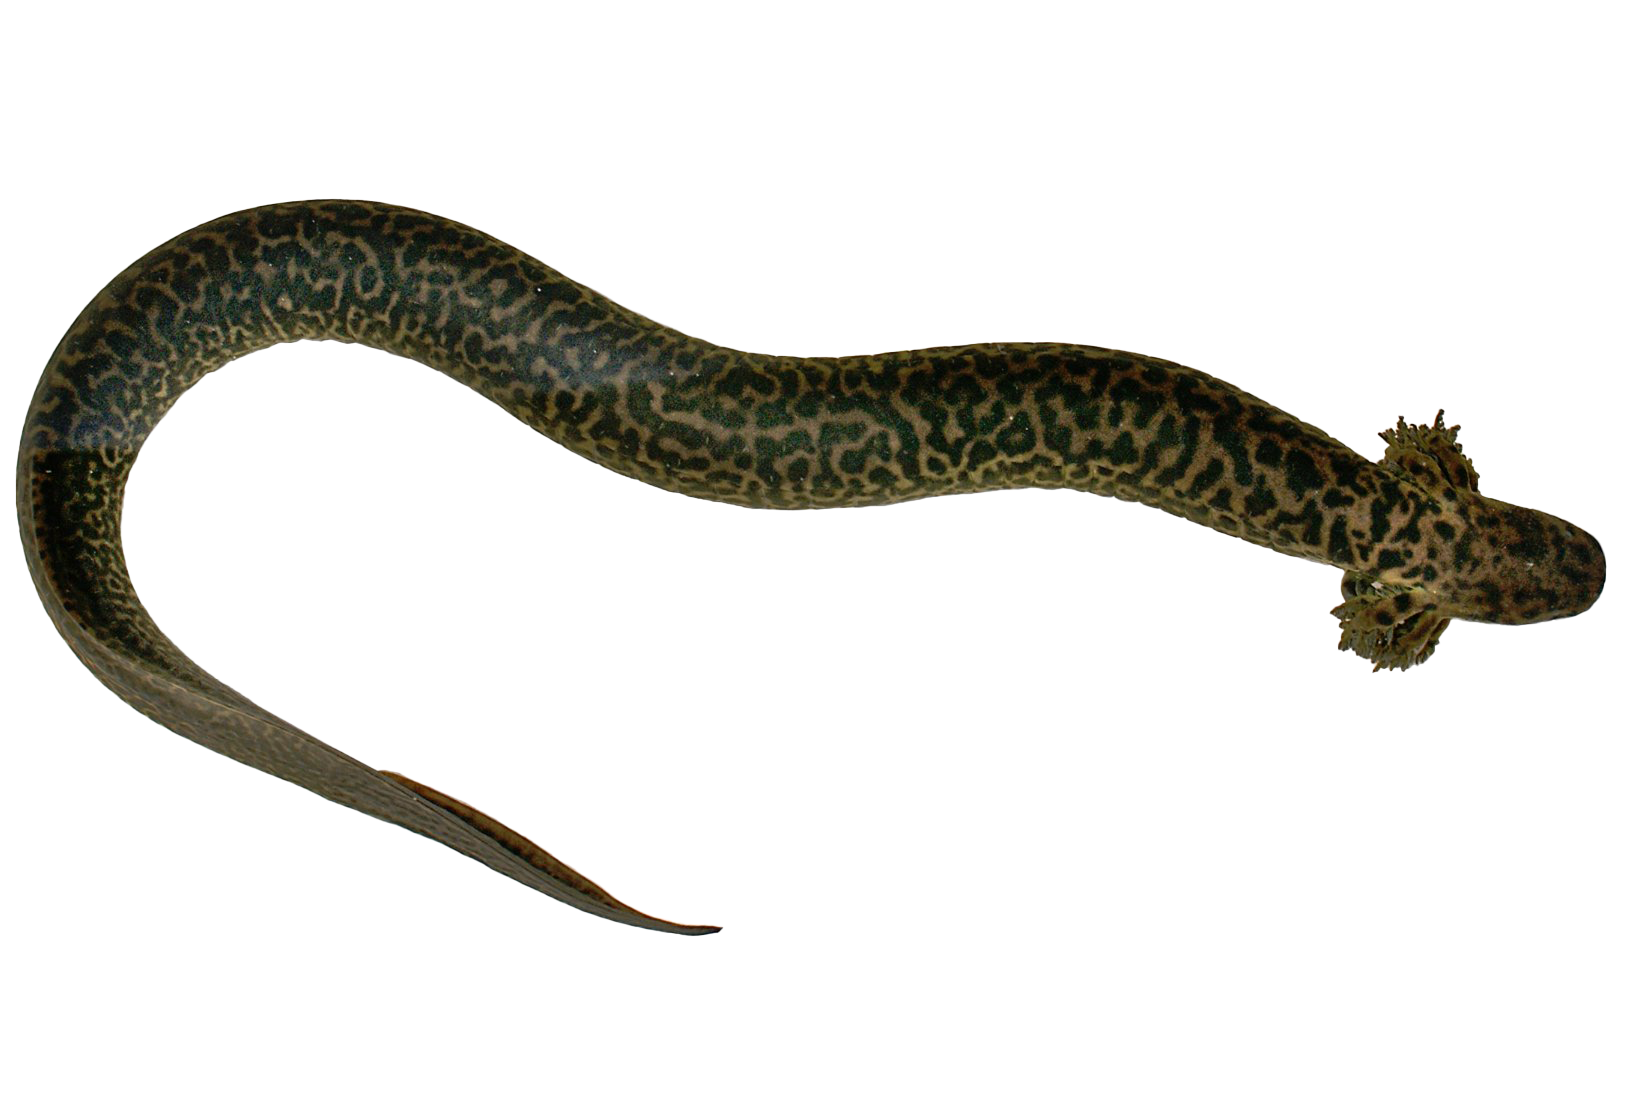 Salamander Lizard PNG Free Image